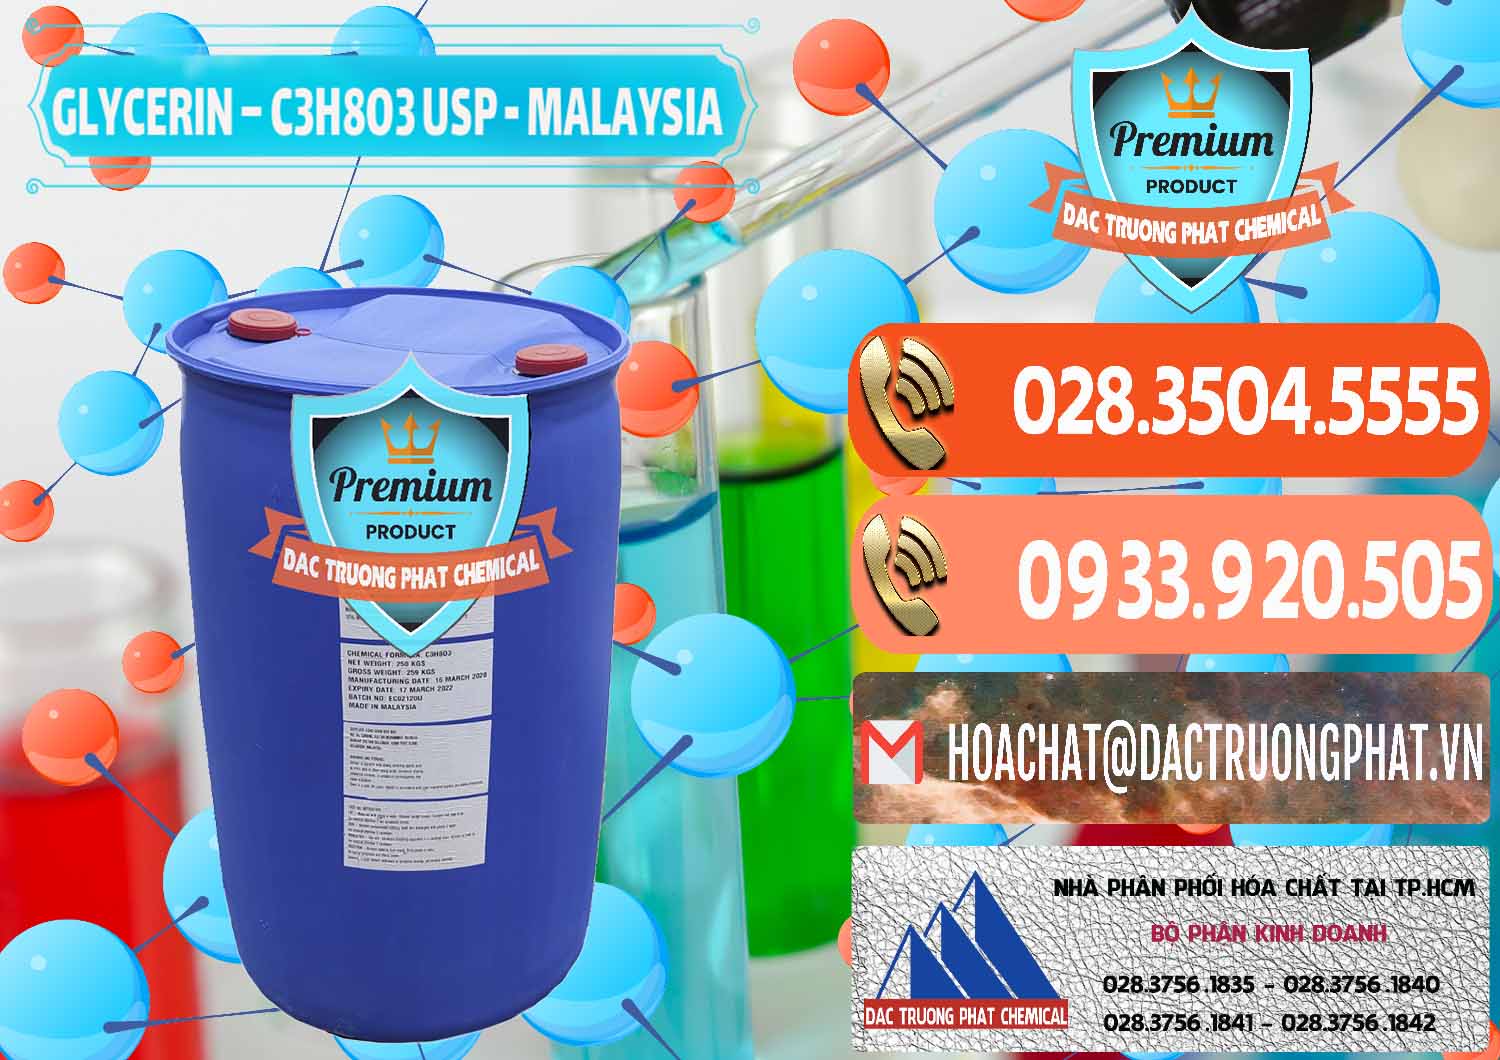 Nơi chuyên cung cấp ( bán ) Glycerin – C3H8O3 USP Malaysia - 0233 - Chuyên phân phối ( bán ) hóa chất tại TP.HCM - hoachatmientay.com